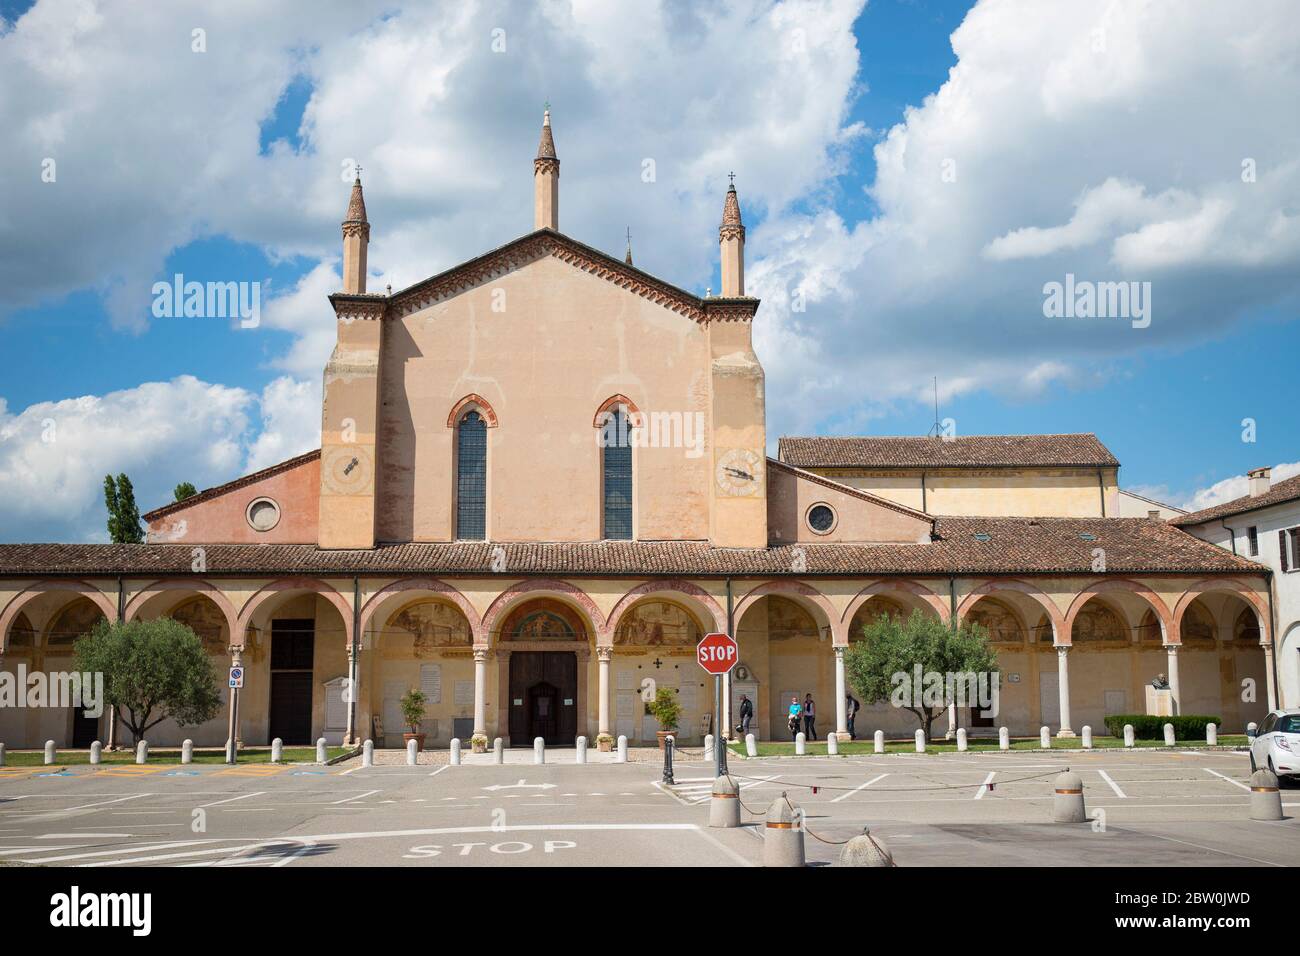 La vue de face et la place du Sanctuaire de Santa Maria delle Grazie à Curtatone, province de Mantoue, Italie. Banque D'Images